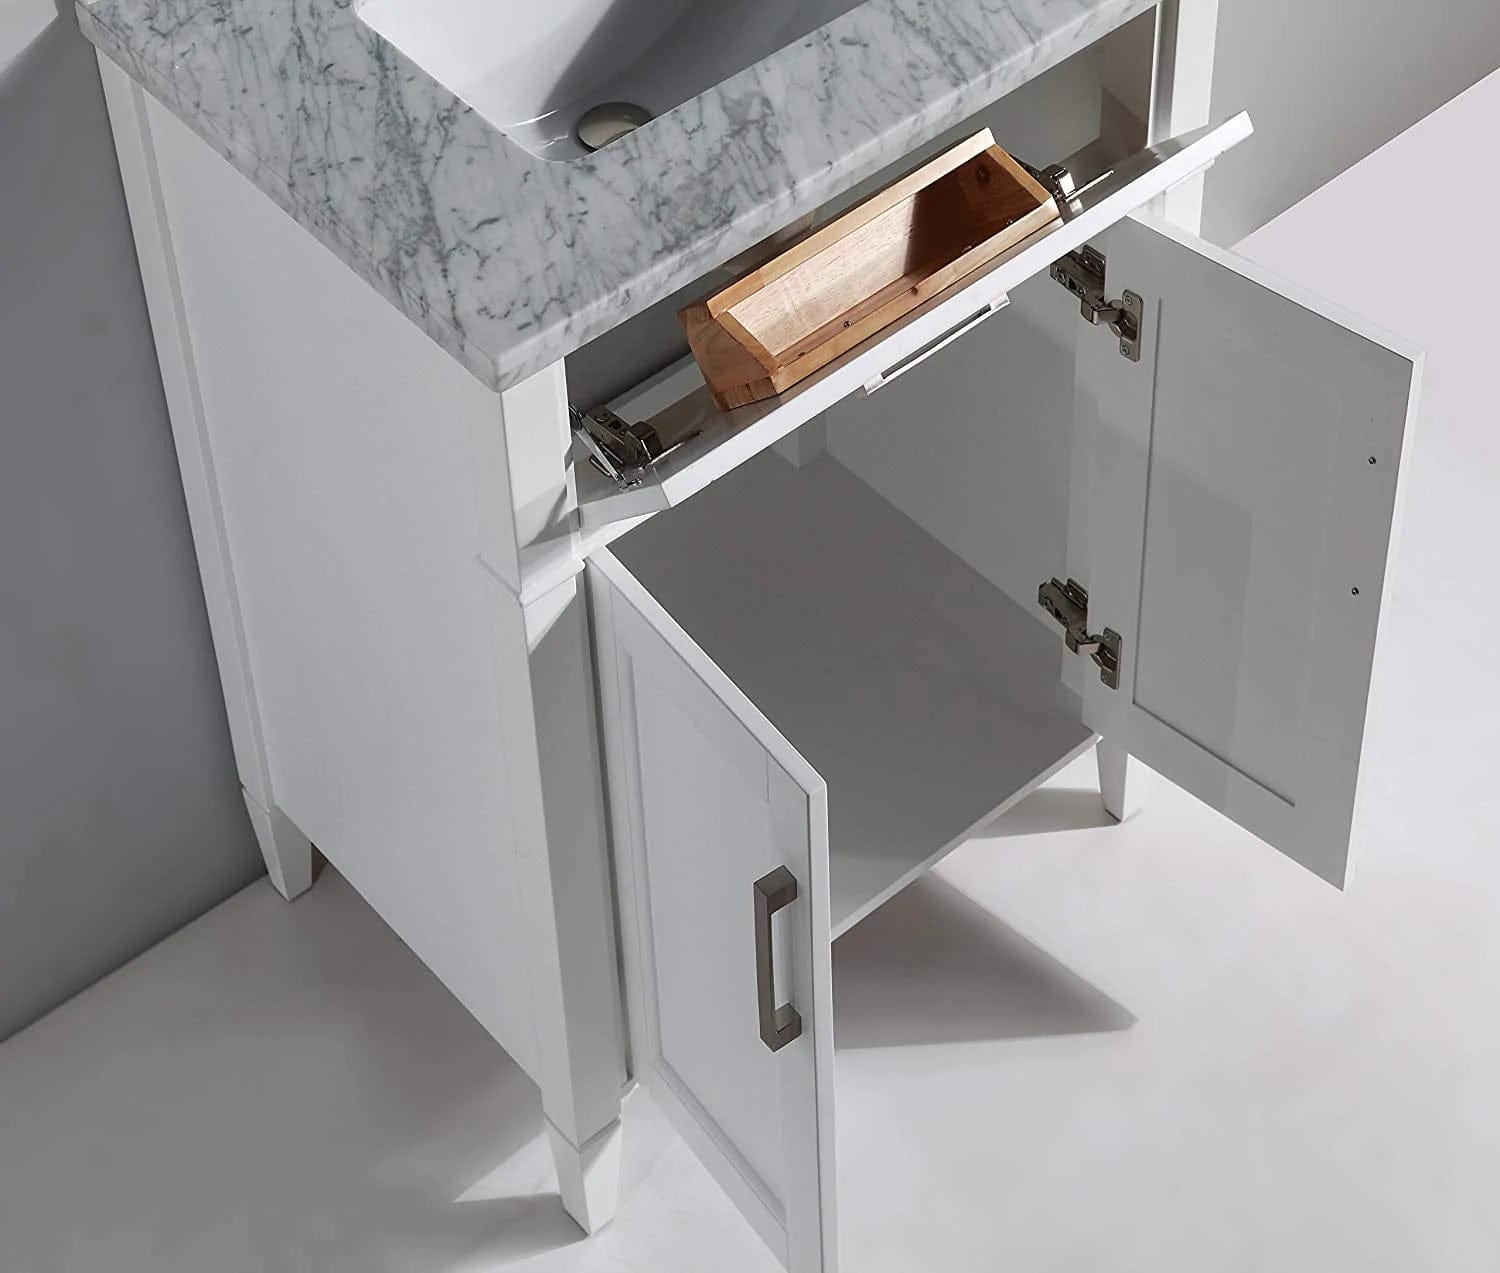 30 in. Single Sink Bathroom Vanity Set in White,Carrara Marble Stone Top